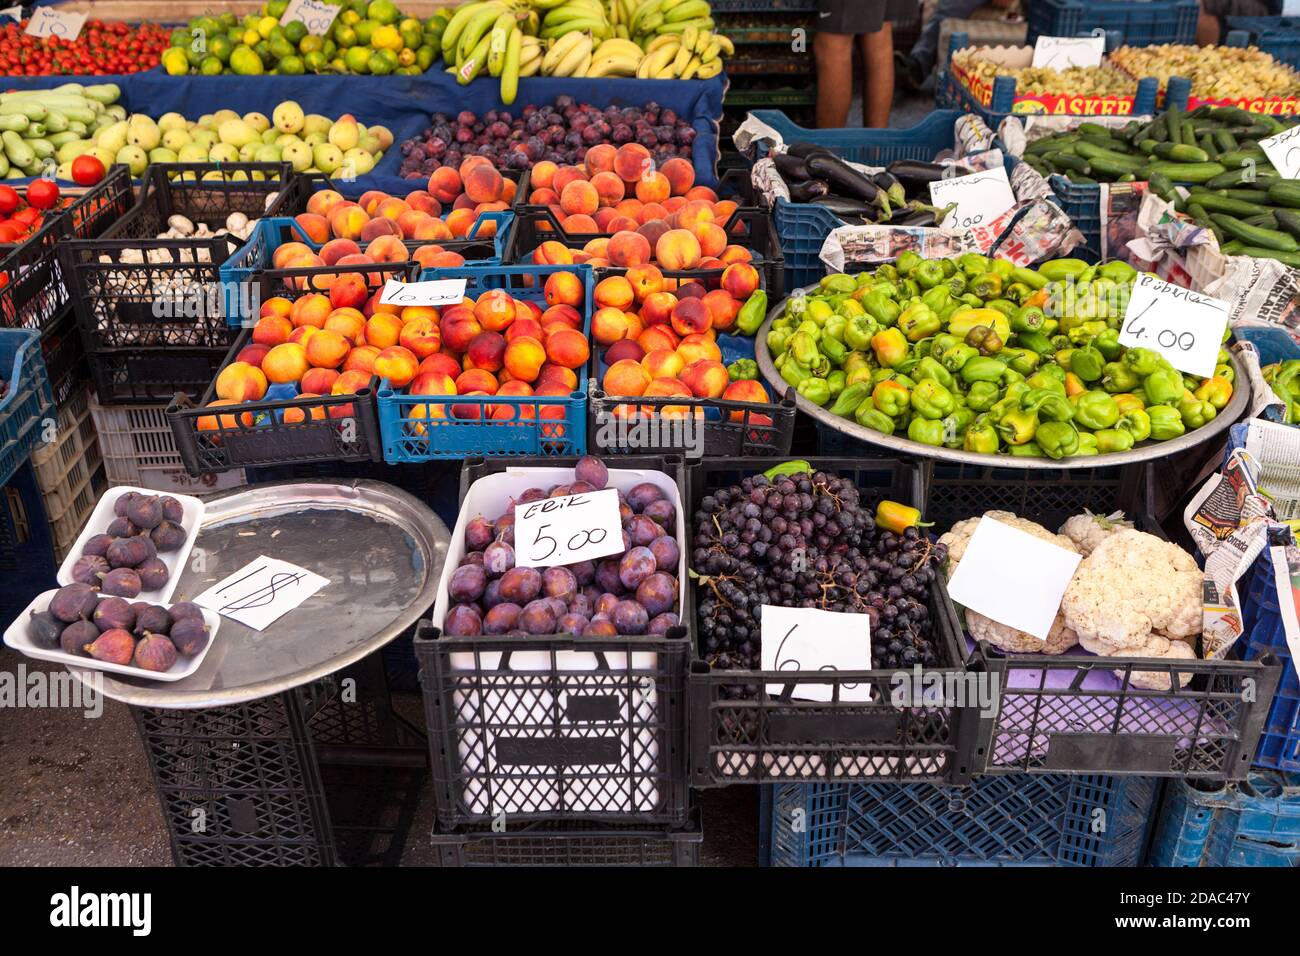 Auf dem Bauernmarkt in der Stadt stehen viele verschiedene Obst- und Gemüsesorten auf dem Tresen. Saisonales Sortiment ist im großen Basar erhältlich. Alanya, Türkei Stockfoto